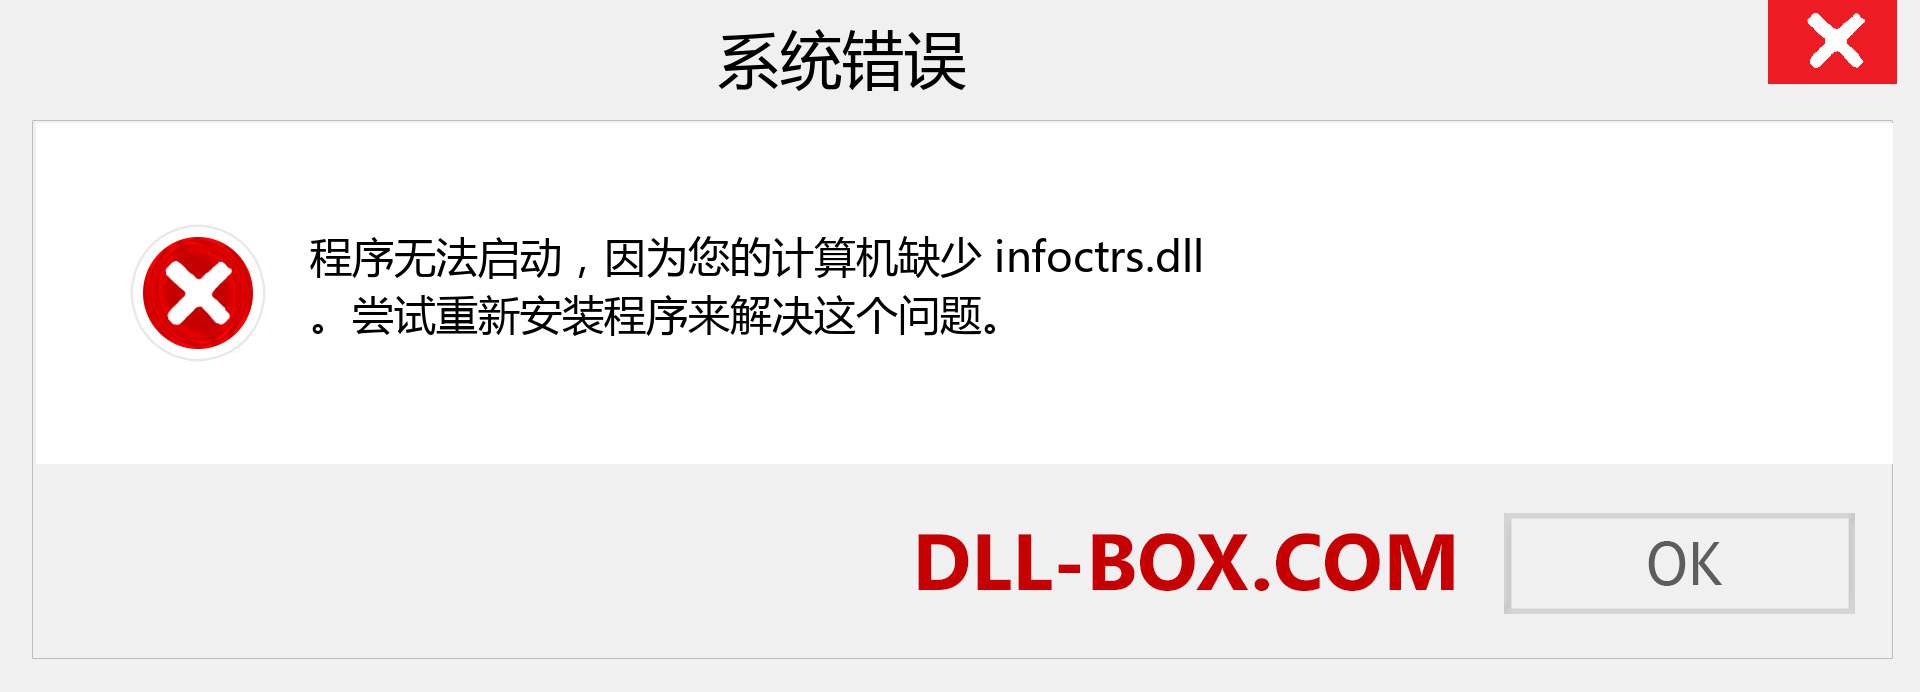 infoctrs.dll 文件丢失？。 适用于 Windows 7、8、10 的下载 - 修复 Windows、照片、图像上的 infoctrs dll 丢失错误